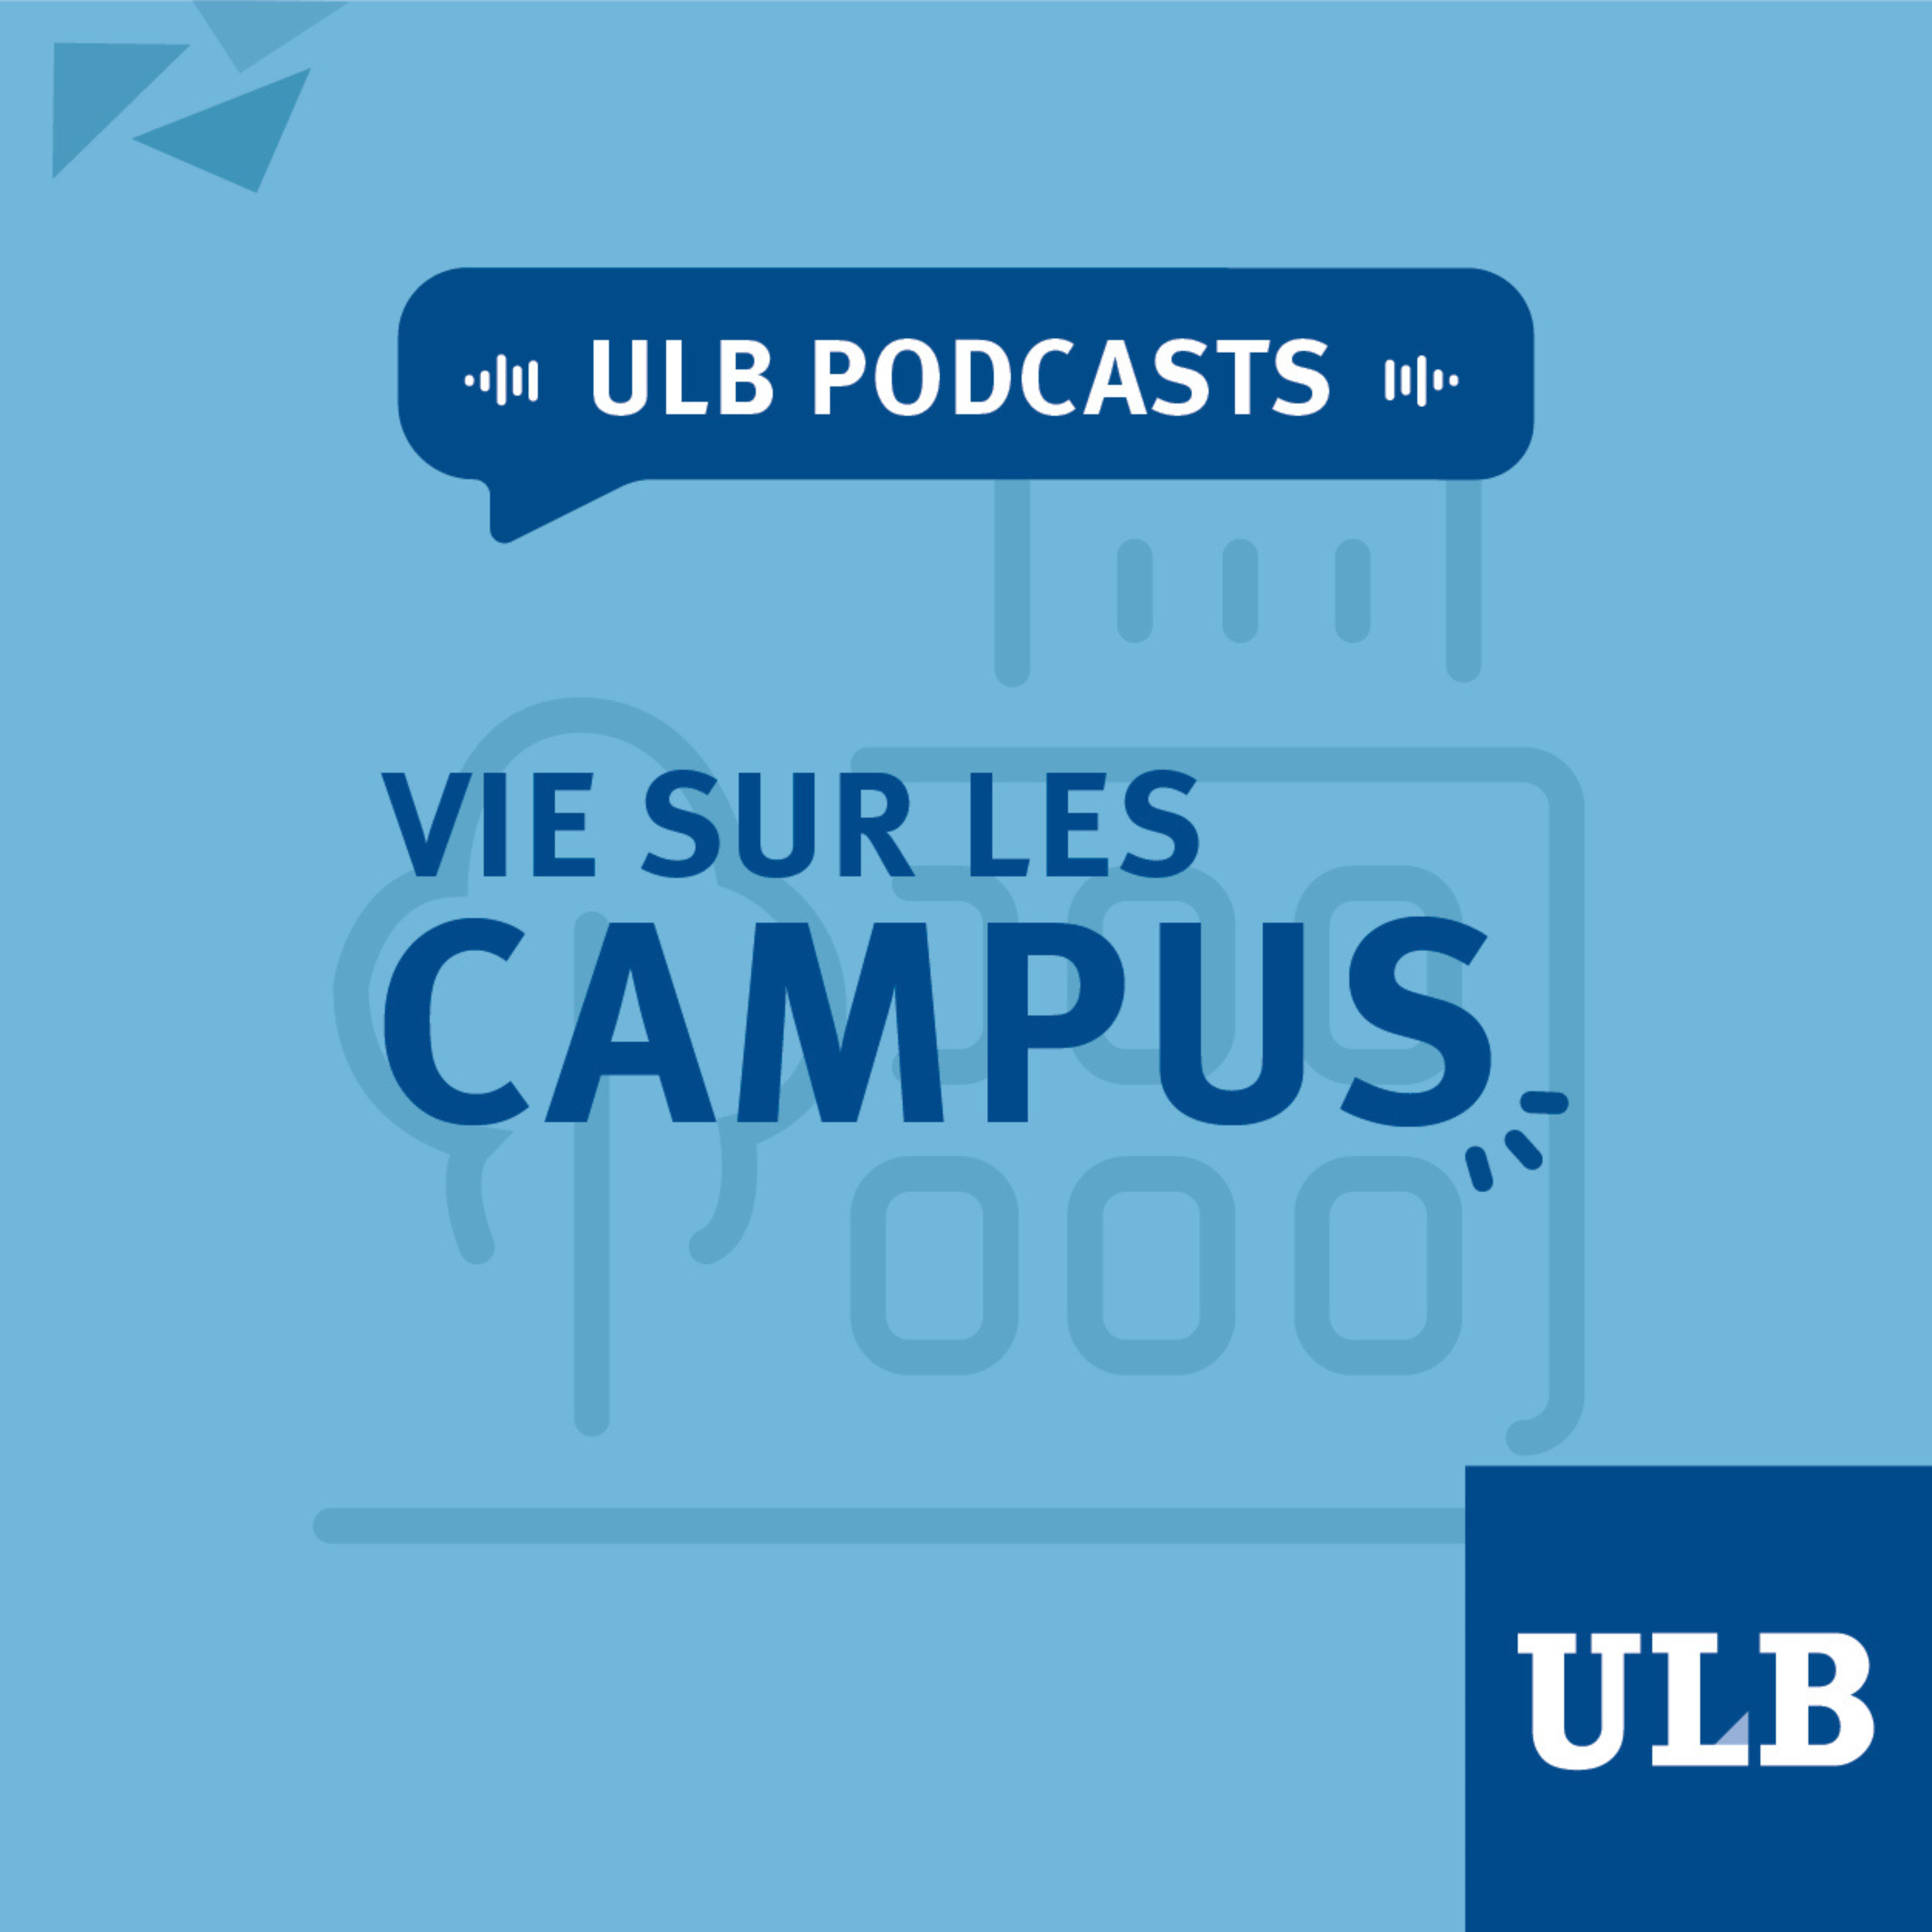 ULB Podcasts - Vie sur les campus